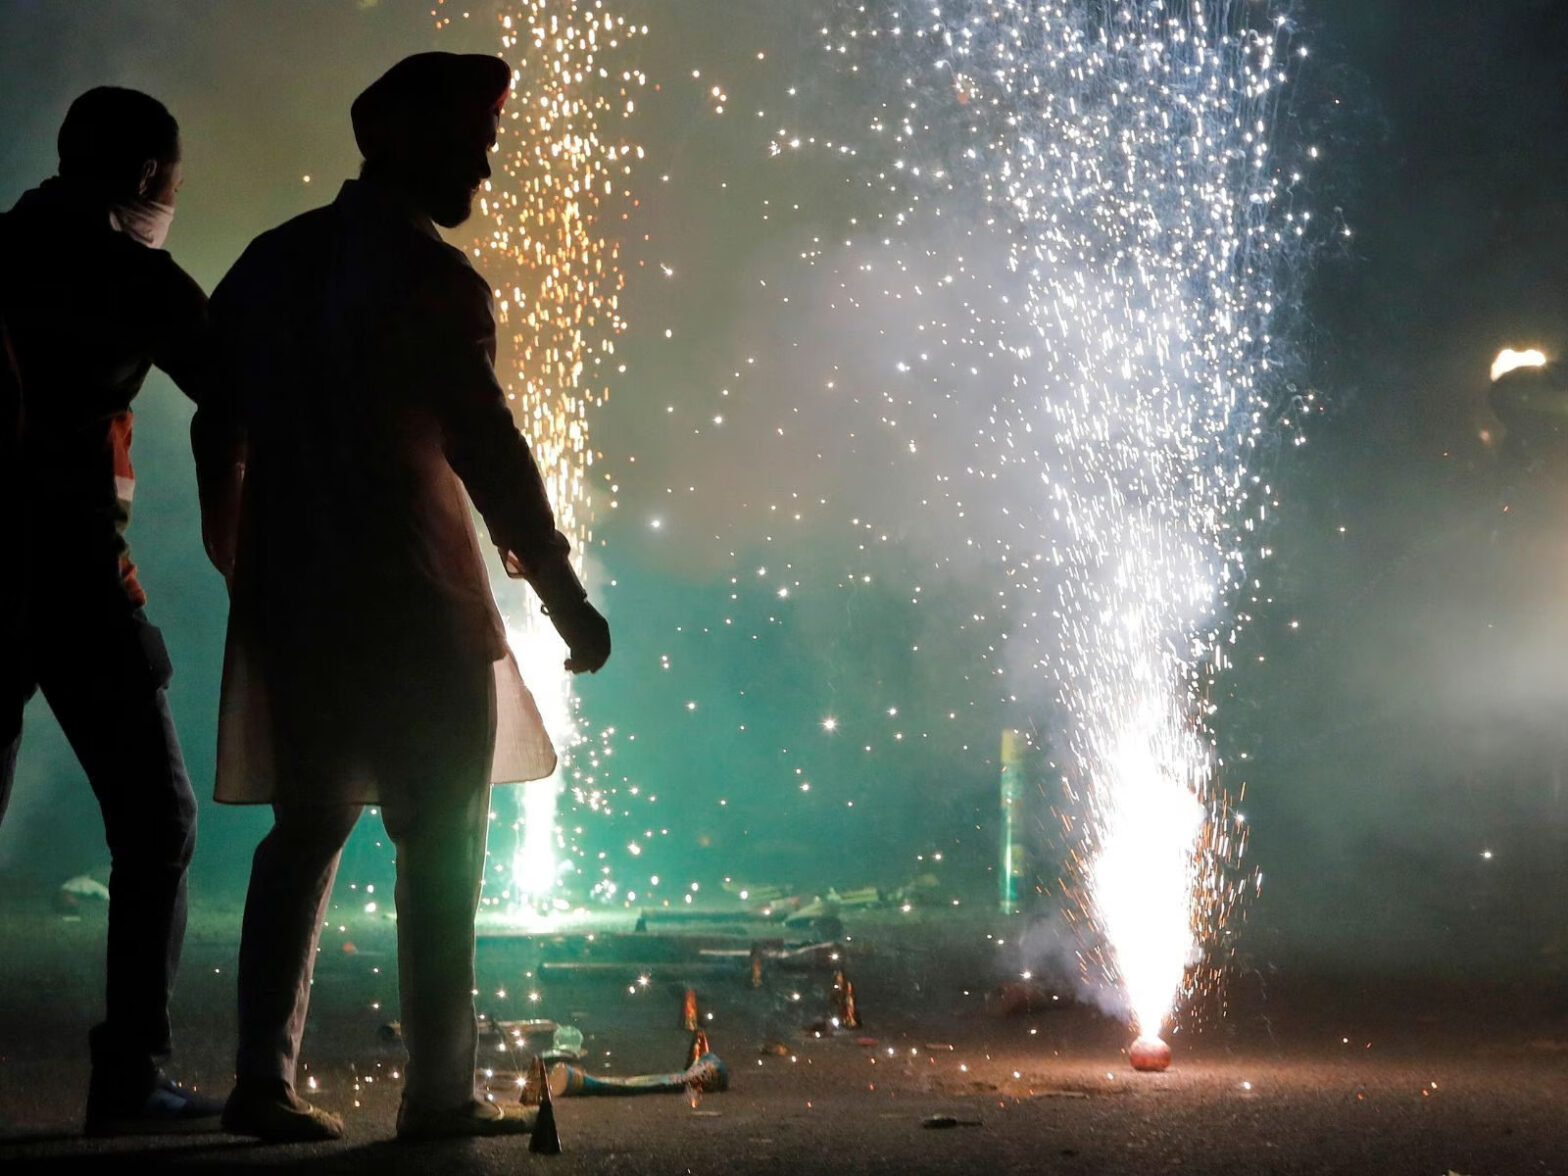 दिवाली, गुरुपर्व, क्रिसमस और नए साल पर कम प्रदूषण करने वाले पटाखों के उपयोग की होगी अनुमति: मीत हेयर